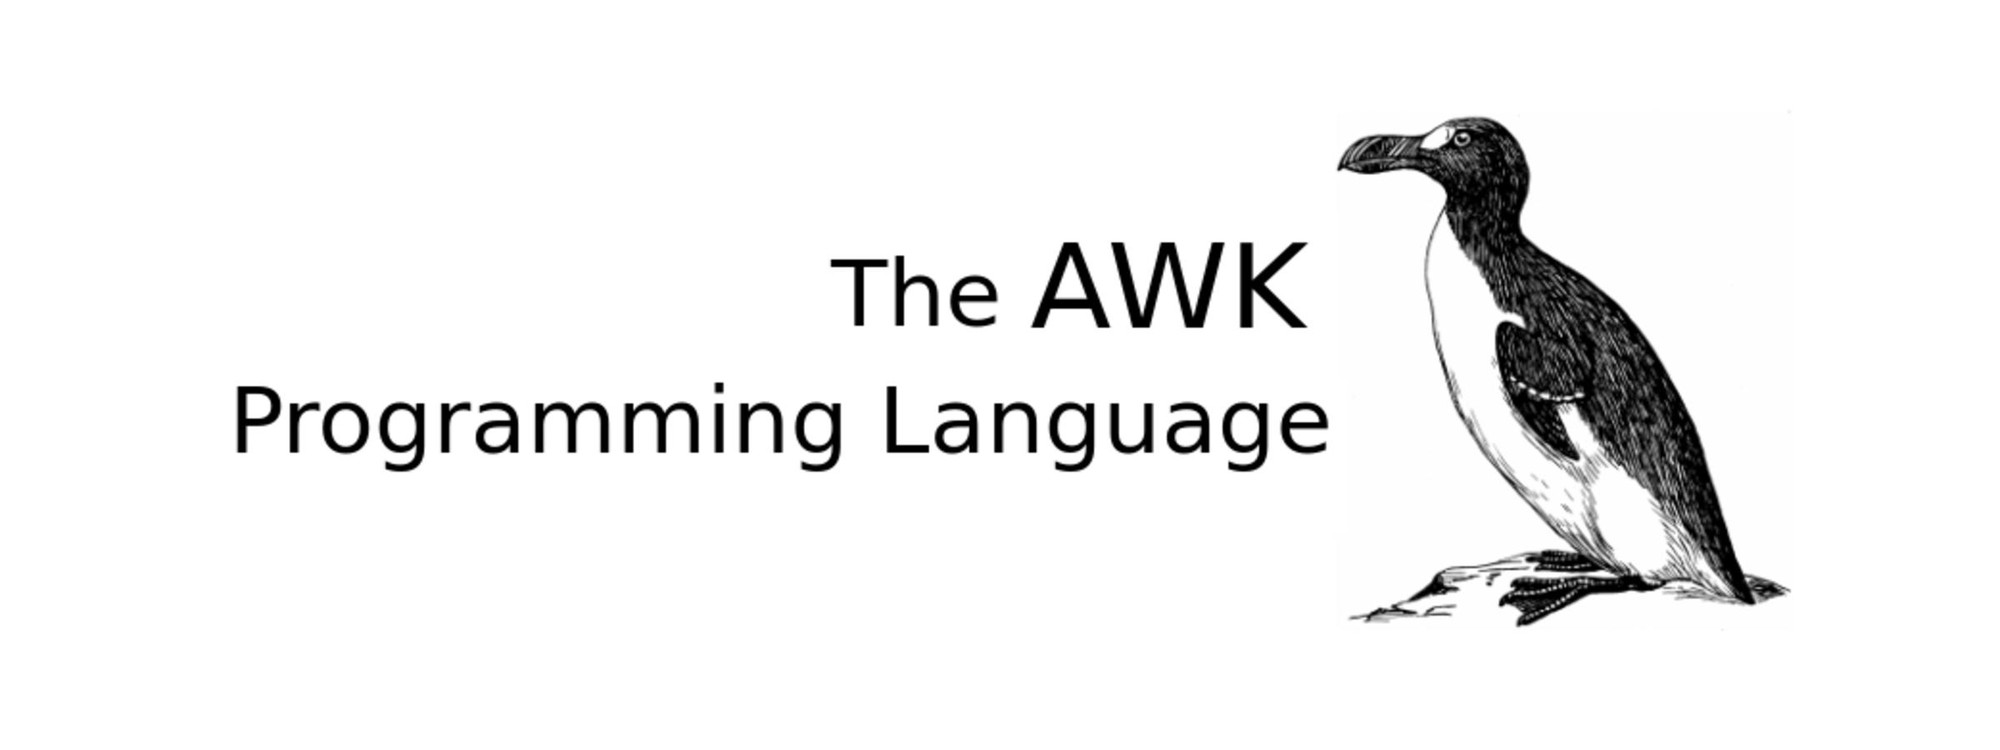 [AWK] Phần 2 - Một vài AWK one-liner